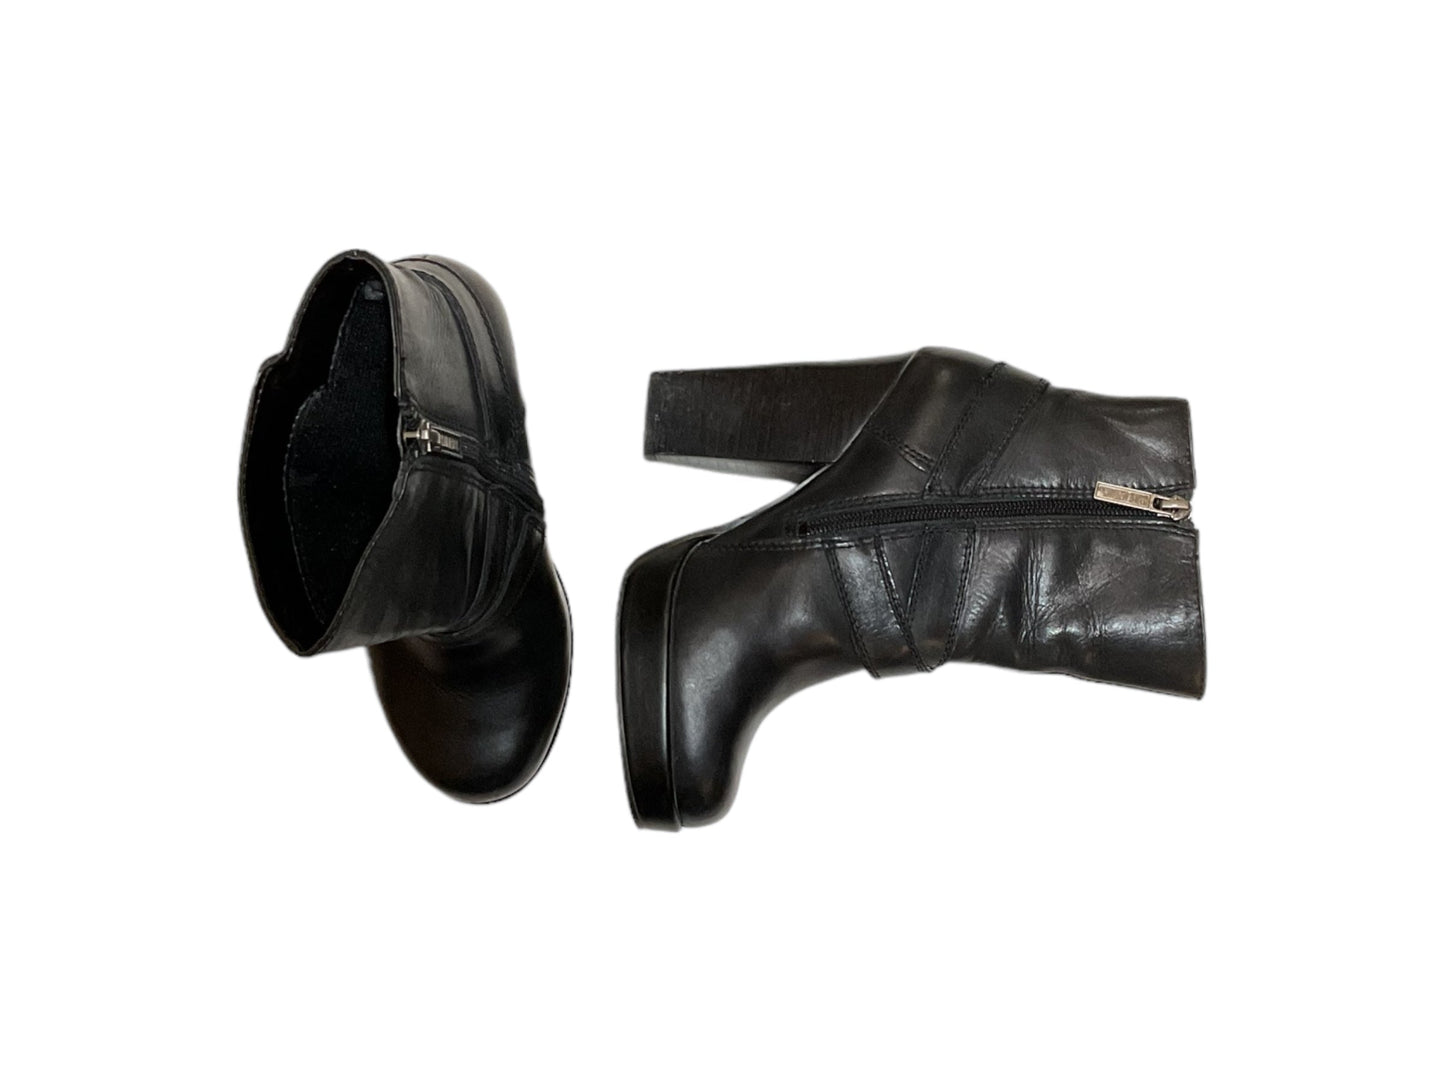 Black Boots Ankle Heels Harley Davidson, Size 5.5